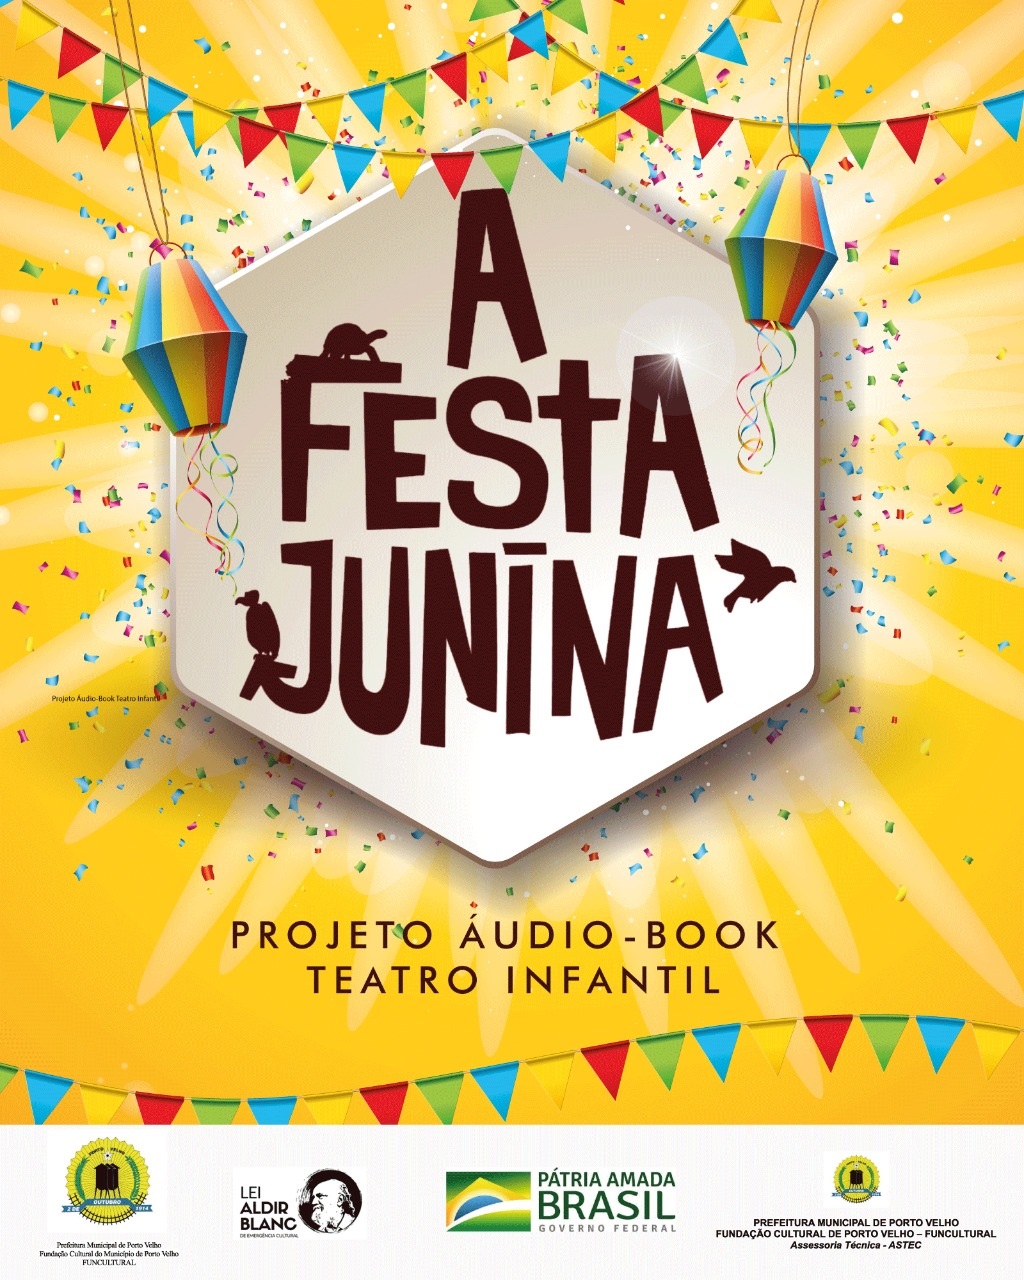 A FESTA JUNINA: Projeto audiobook apresenta antigo formato de contos infantis; acesso ao material é gratuito